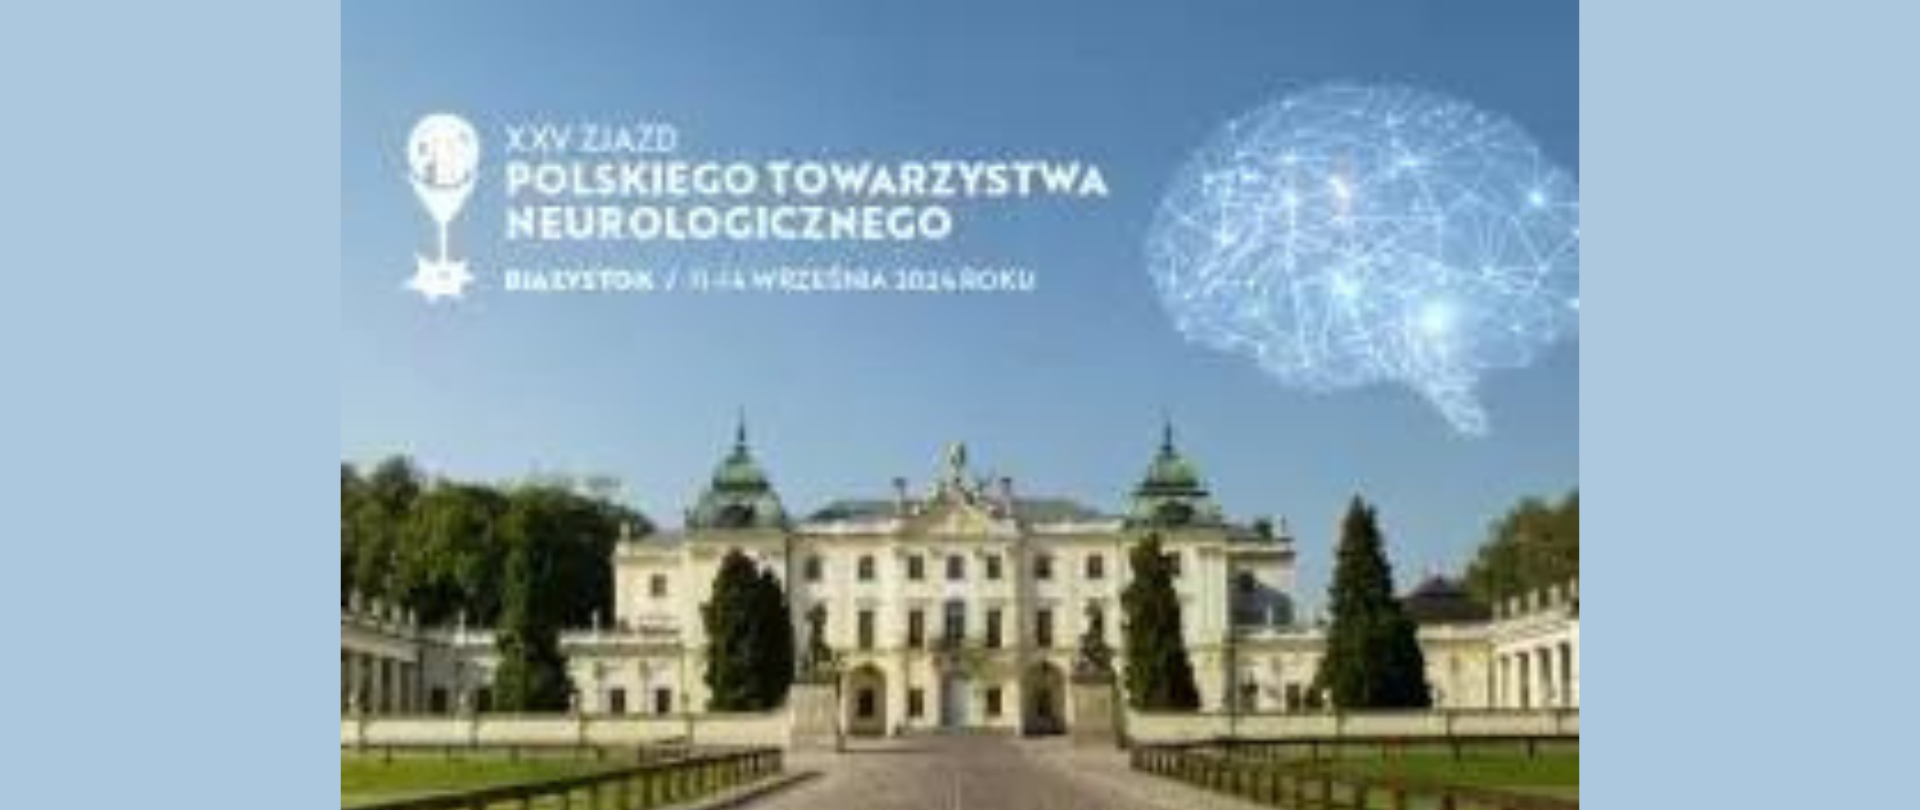 Baner XXV zjazdu Polskiego Towarzystwa Neurologicznego